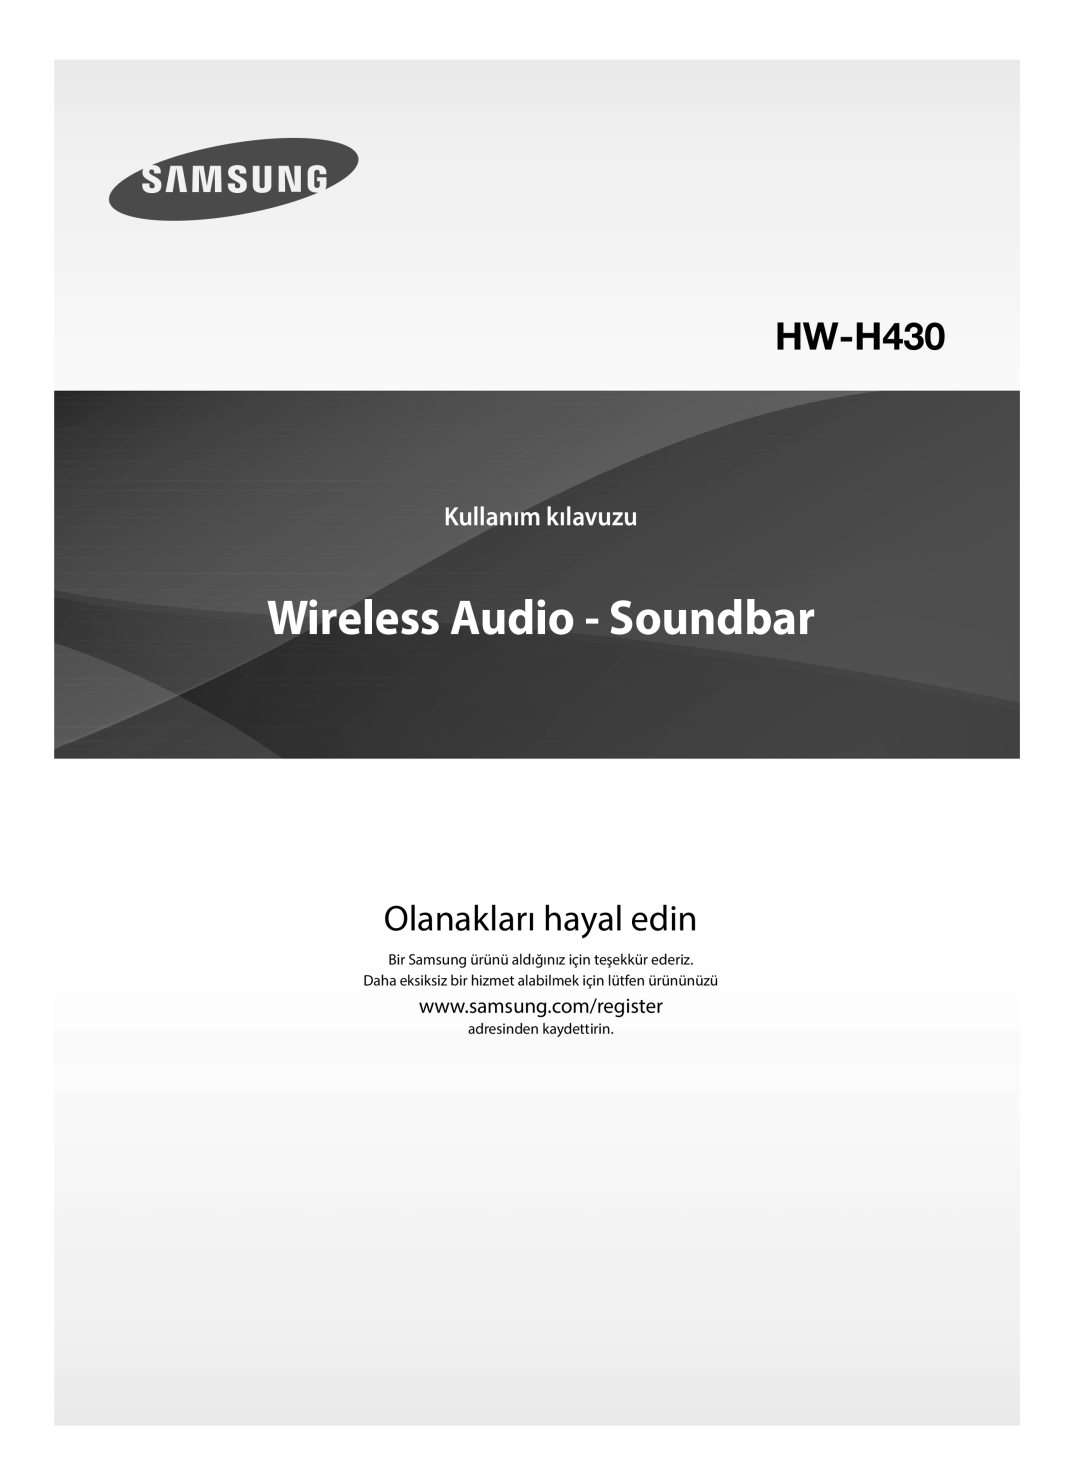 Samsung HW-H430/EN, HW-H430/TK, HW-H430/ZF manual Wireless Audio - Soundbar, Olanakları hayal edin, Kullanım kılavuzu 